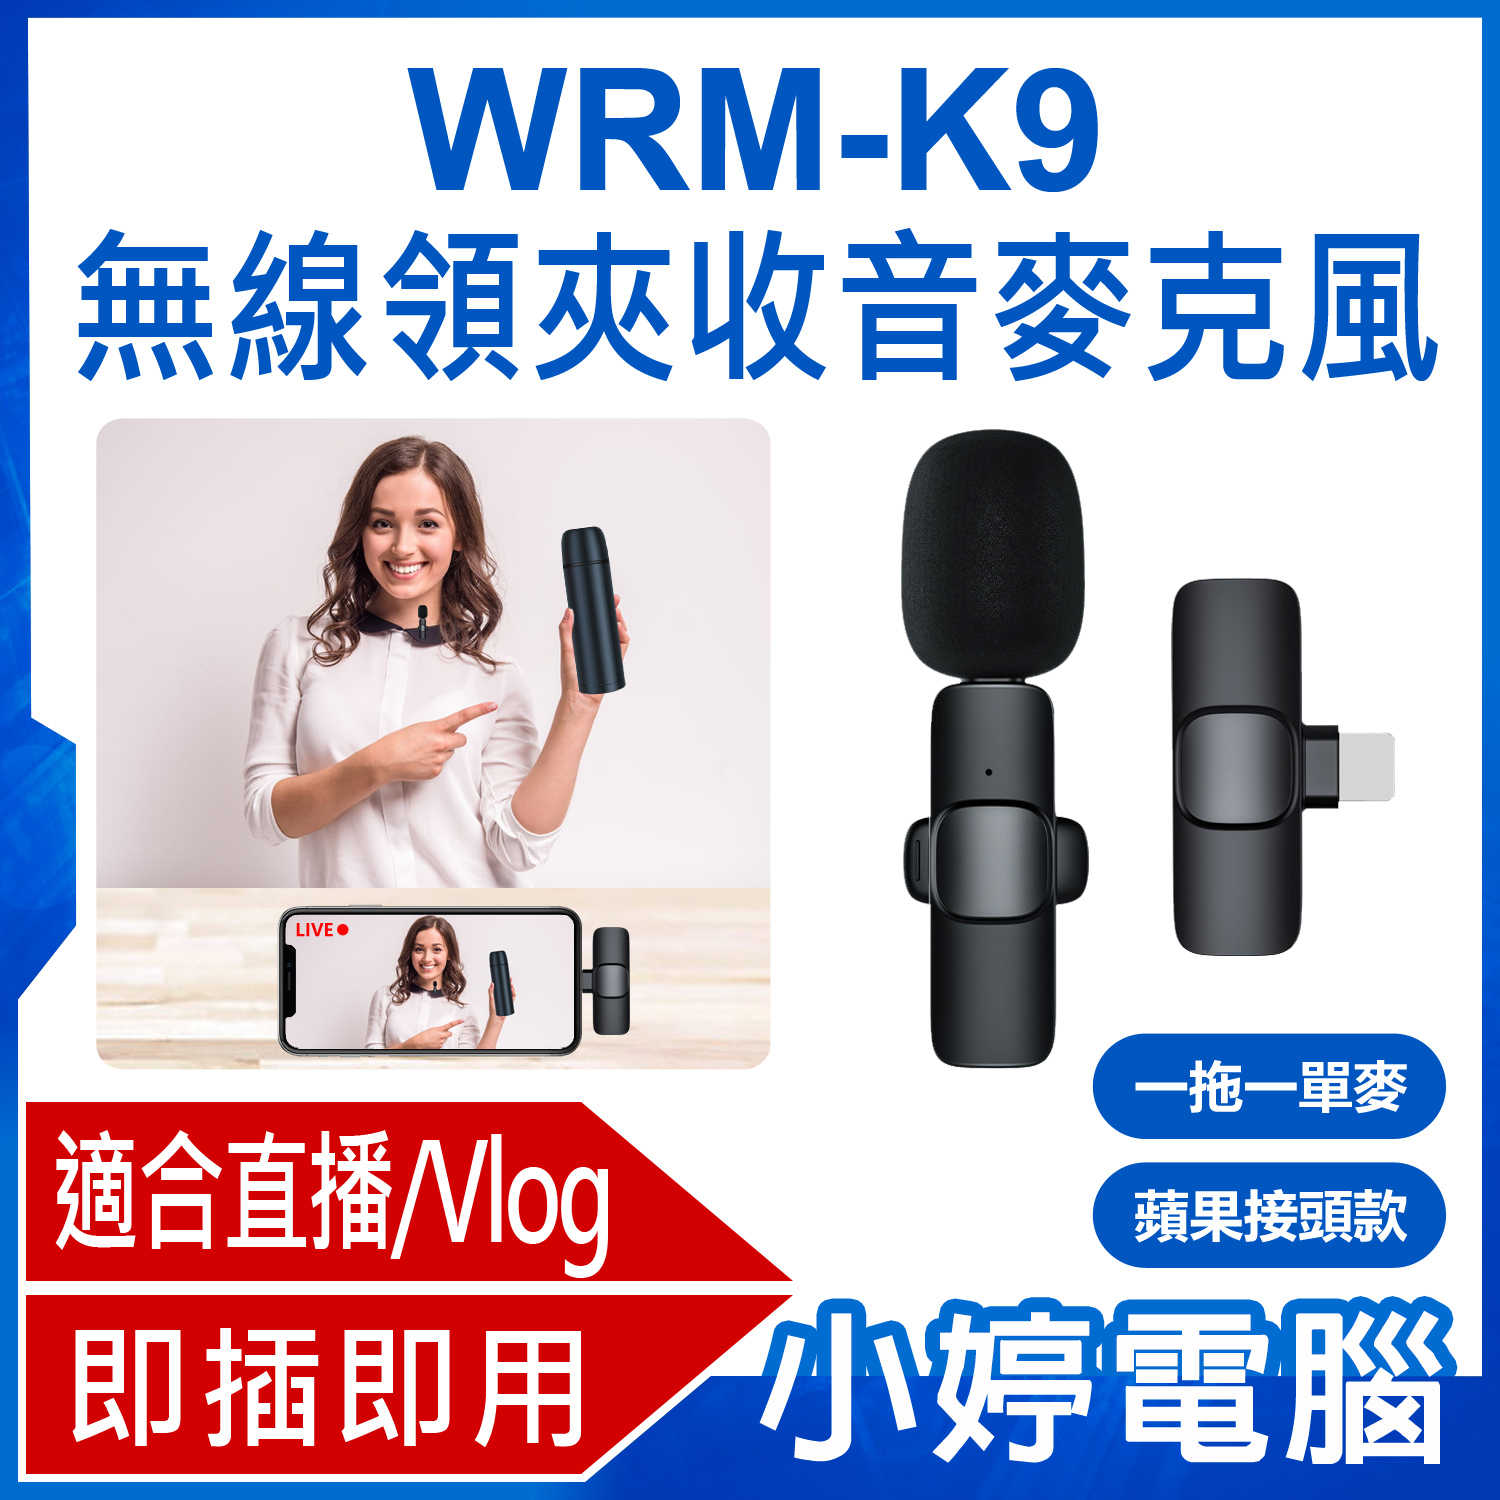 【小婷電腦】WRM-K9 蘋果接頭款 一拖一單麥 直播網美大推 無線領夾收音麥克風 Vlog採訪